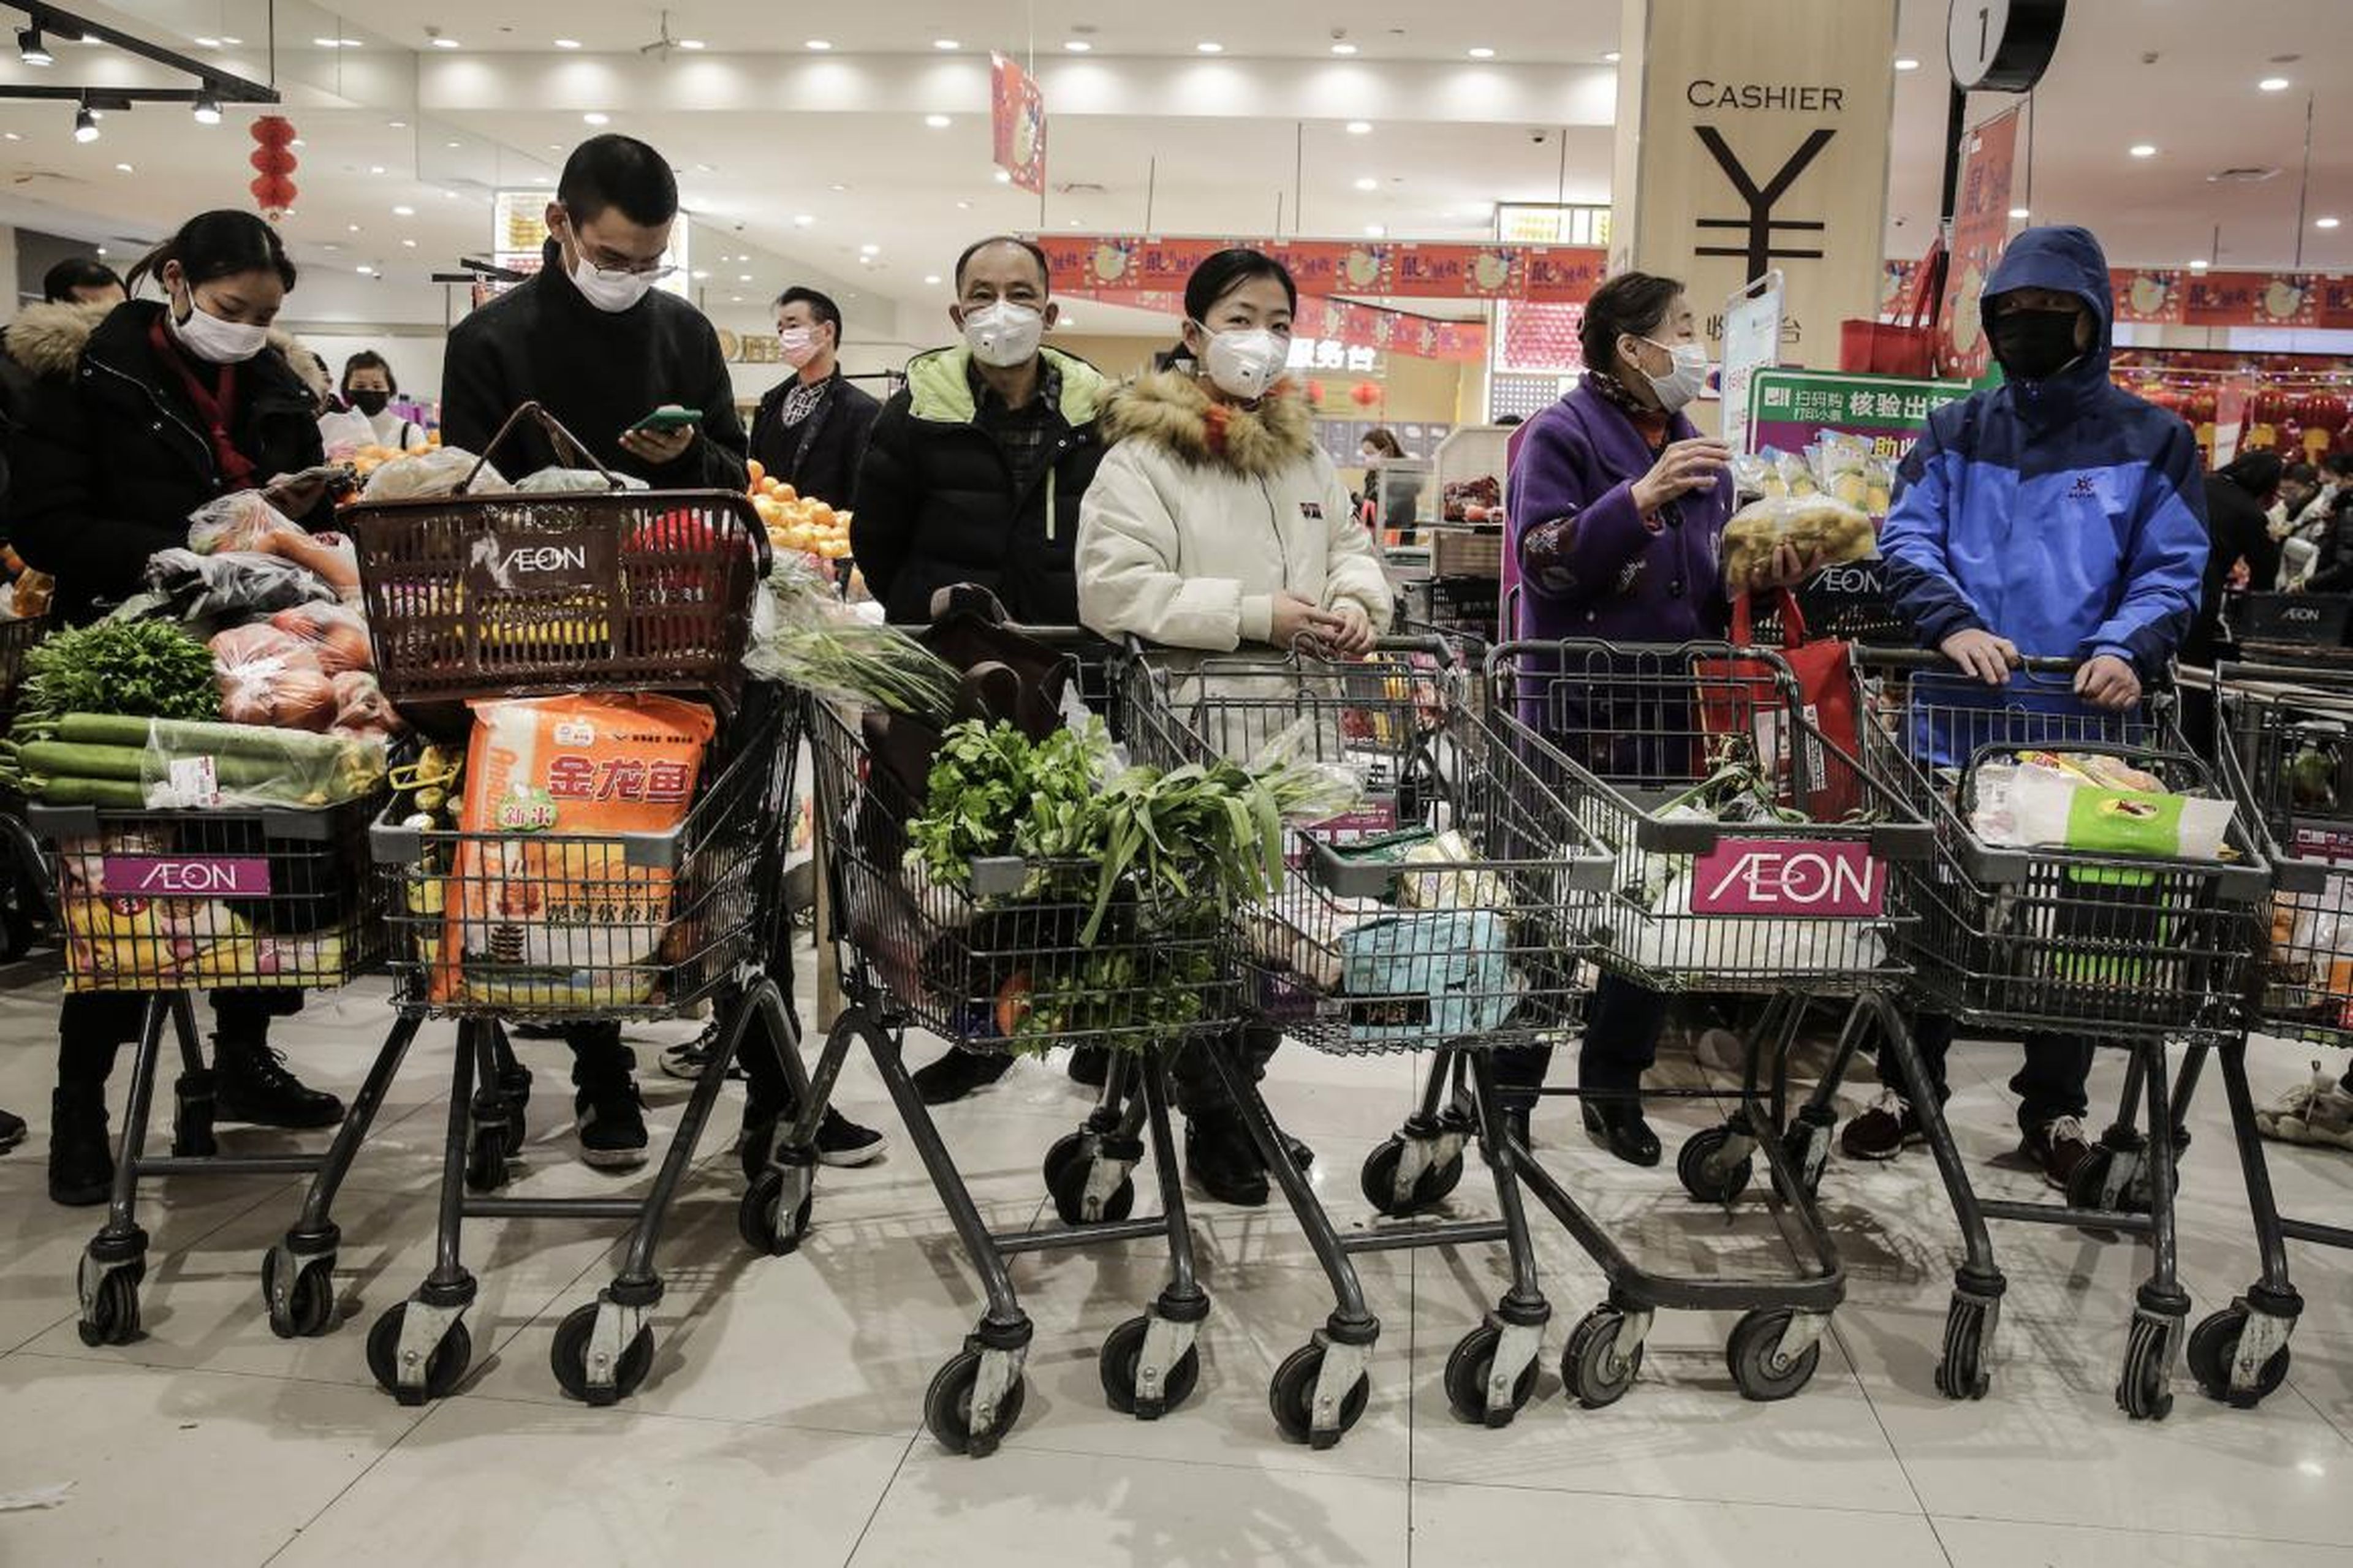 Los residentes de Wuhan usan máscaras cuando compran alimentos el 23 de enero de 2020.